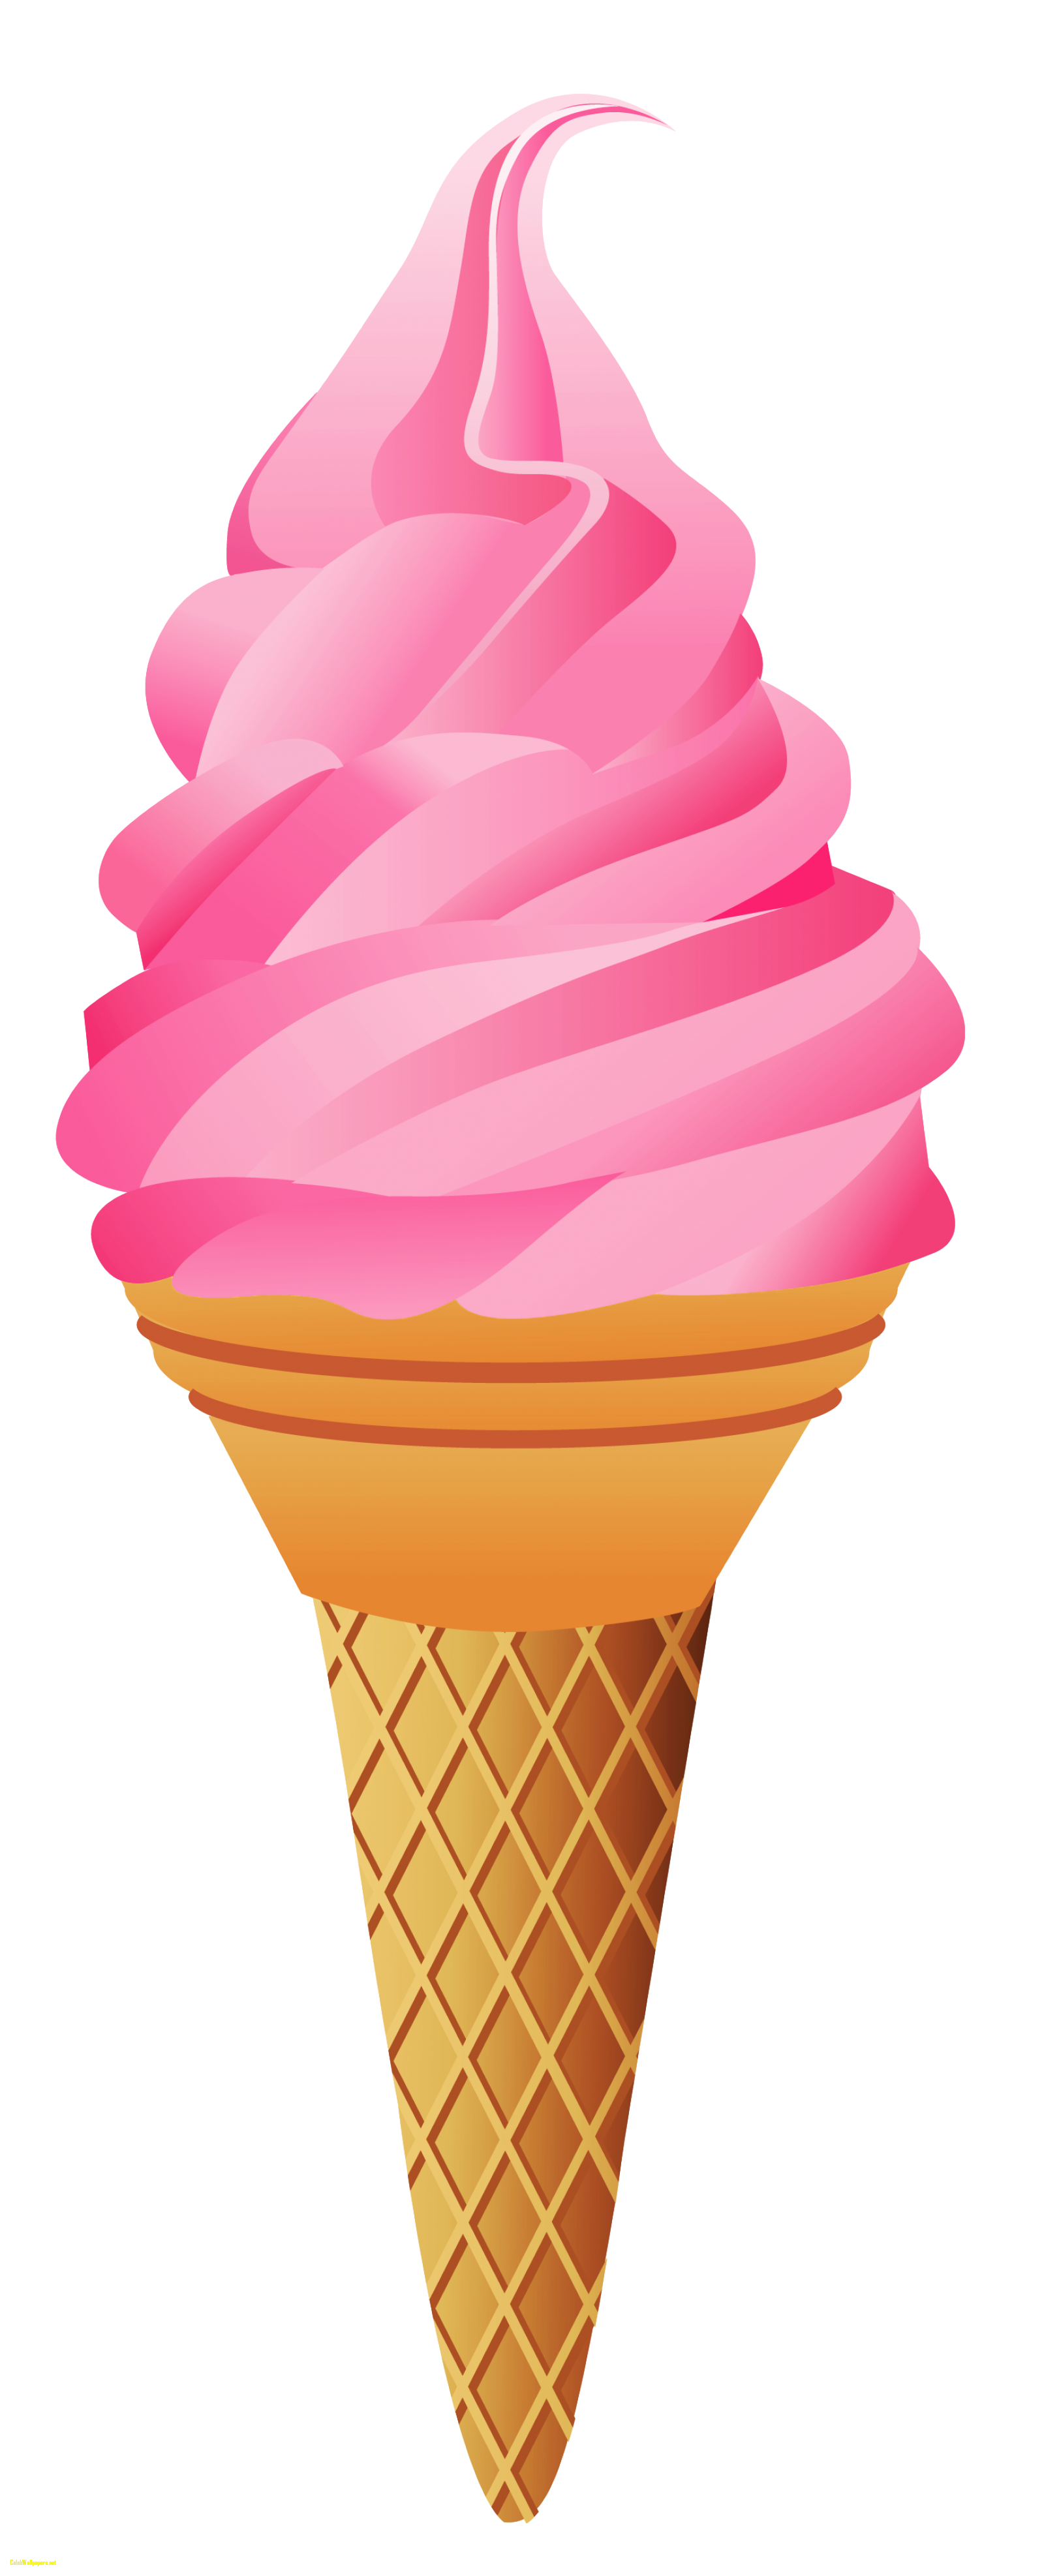 strawberries clipart ice cream cone